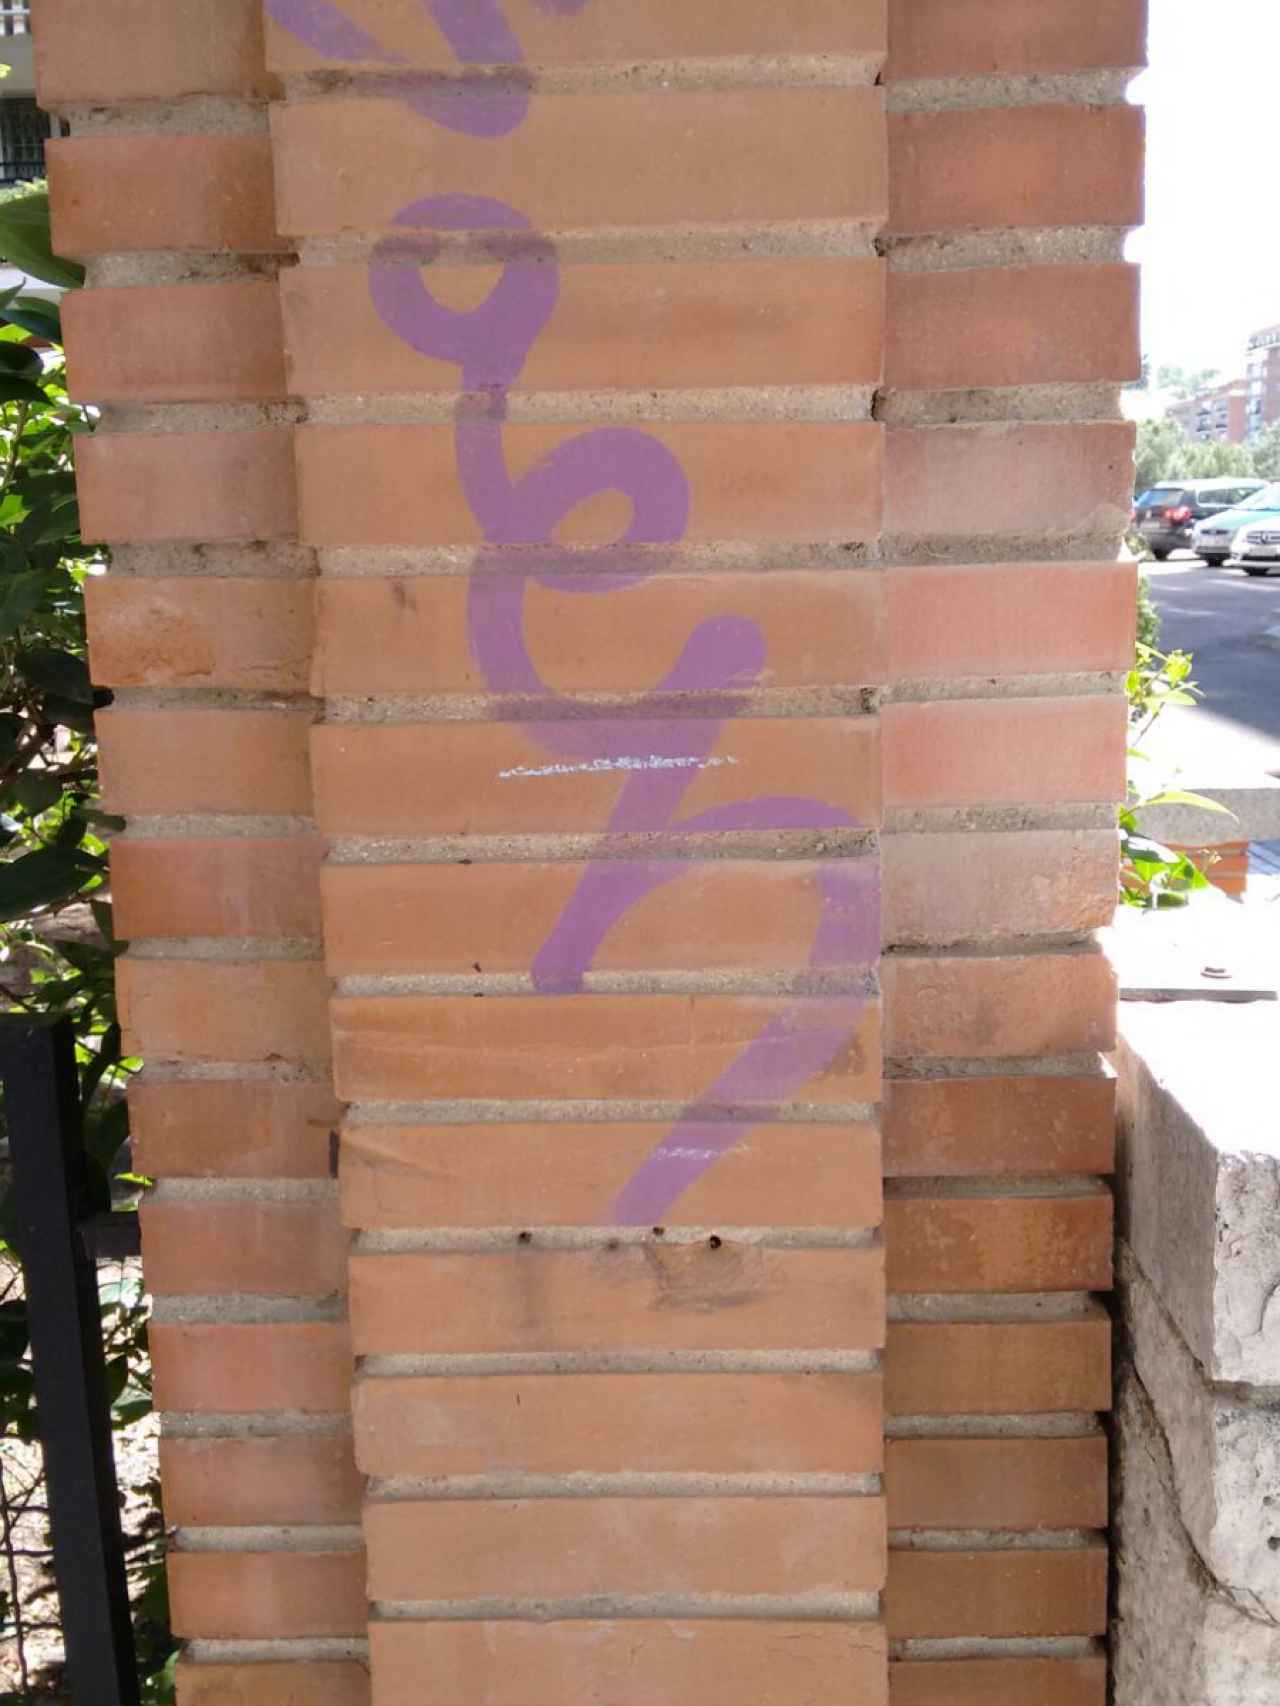 En las calles de Latina se puede leer el nombre de Sáez dibujado en grafitis.